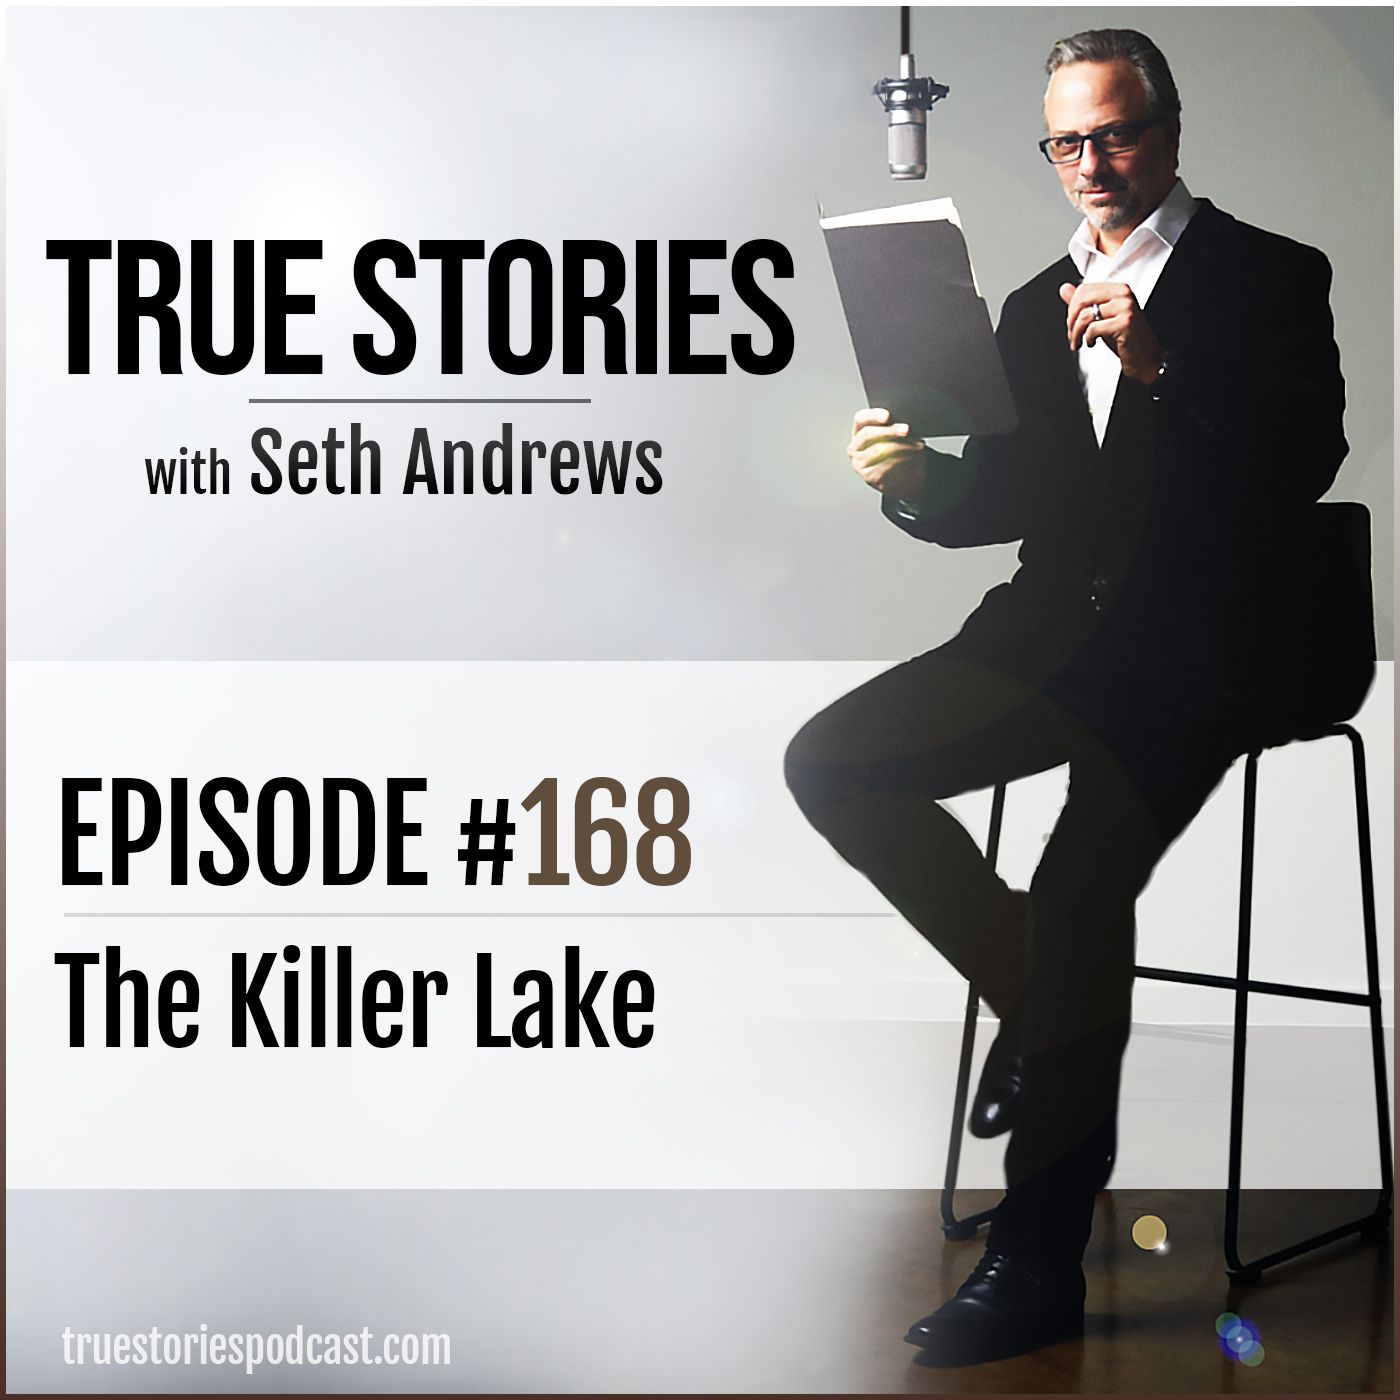 True Stories #168 - The Killer Lake